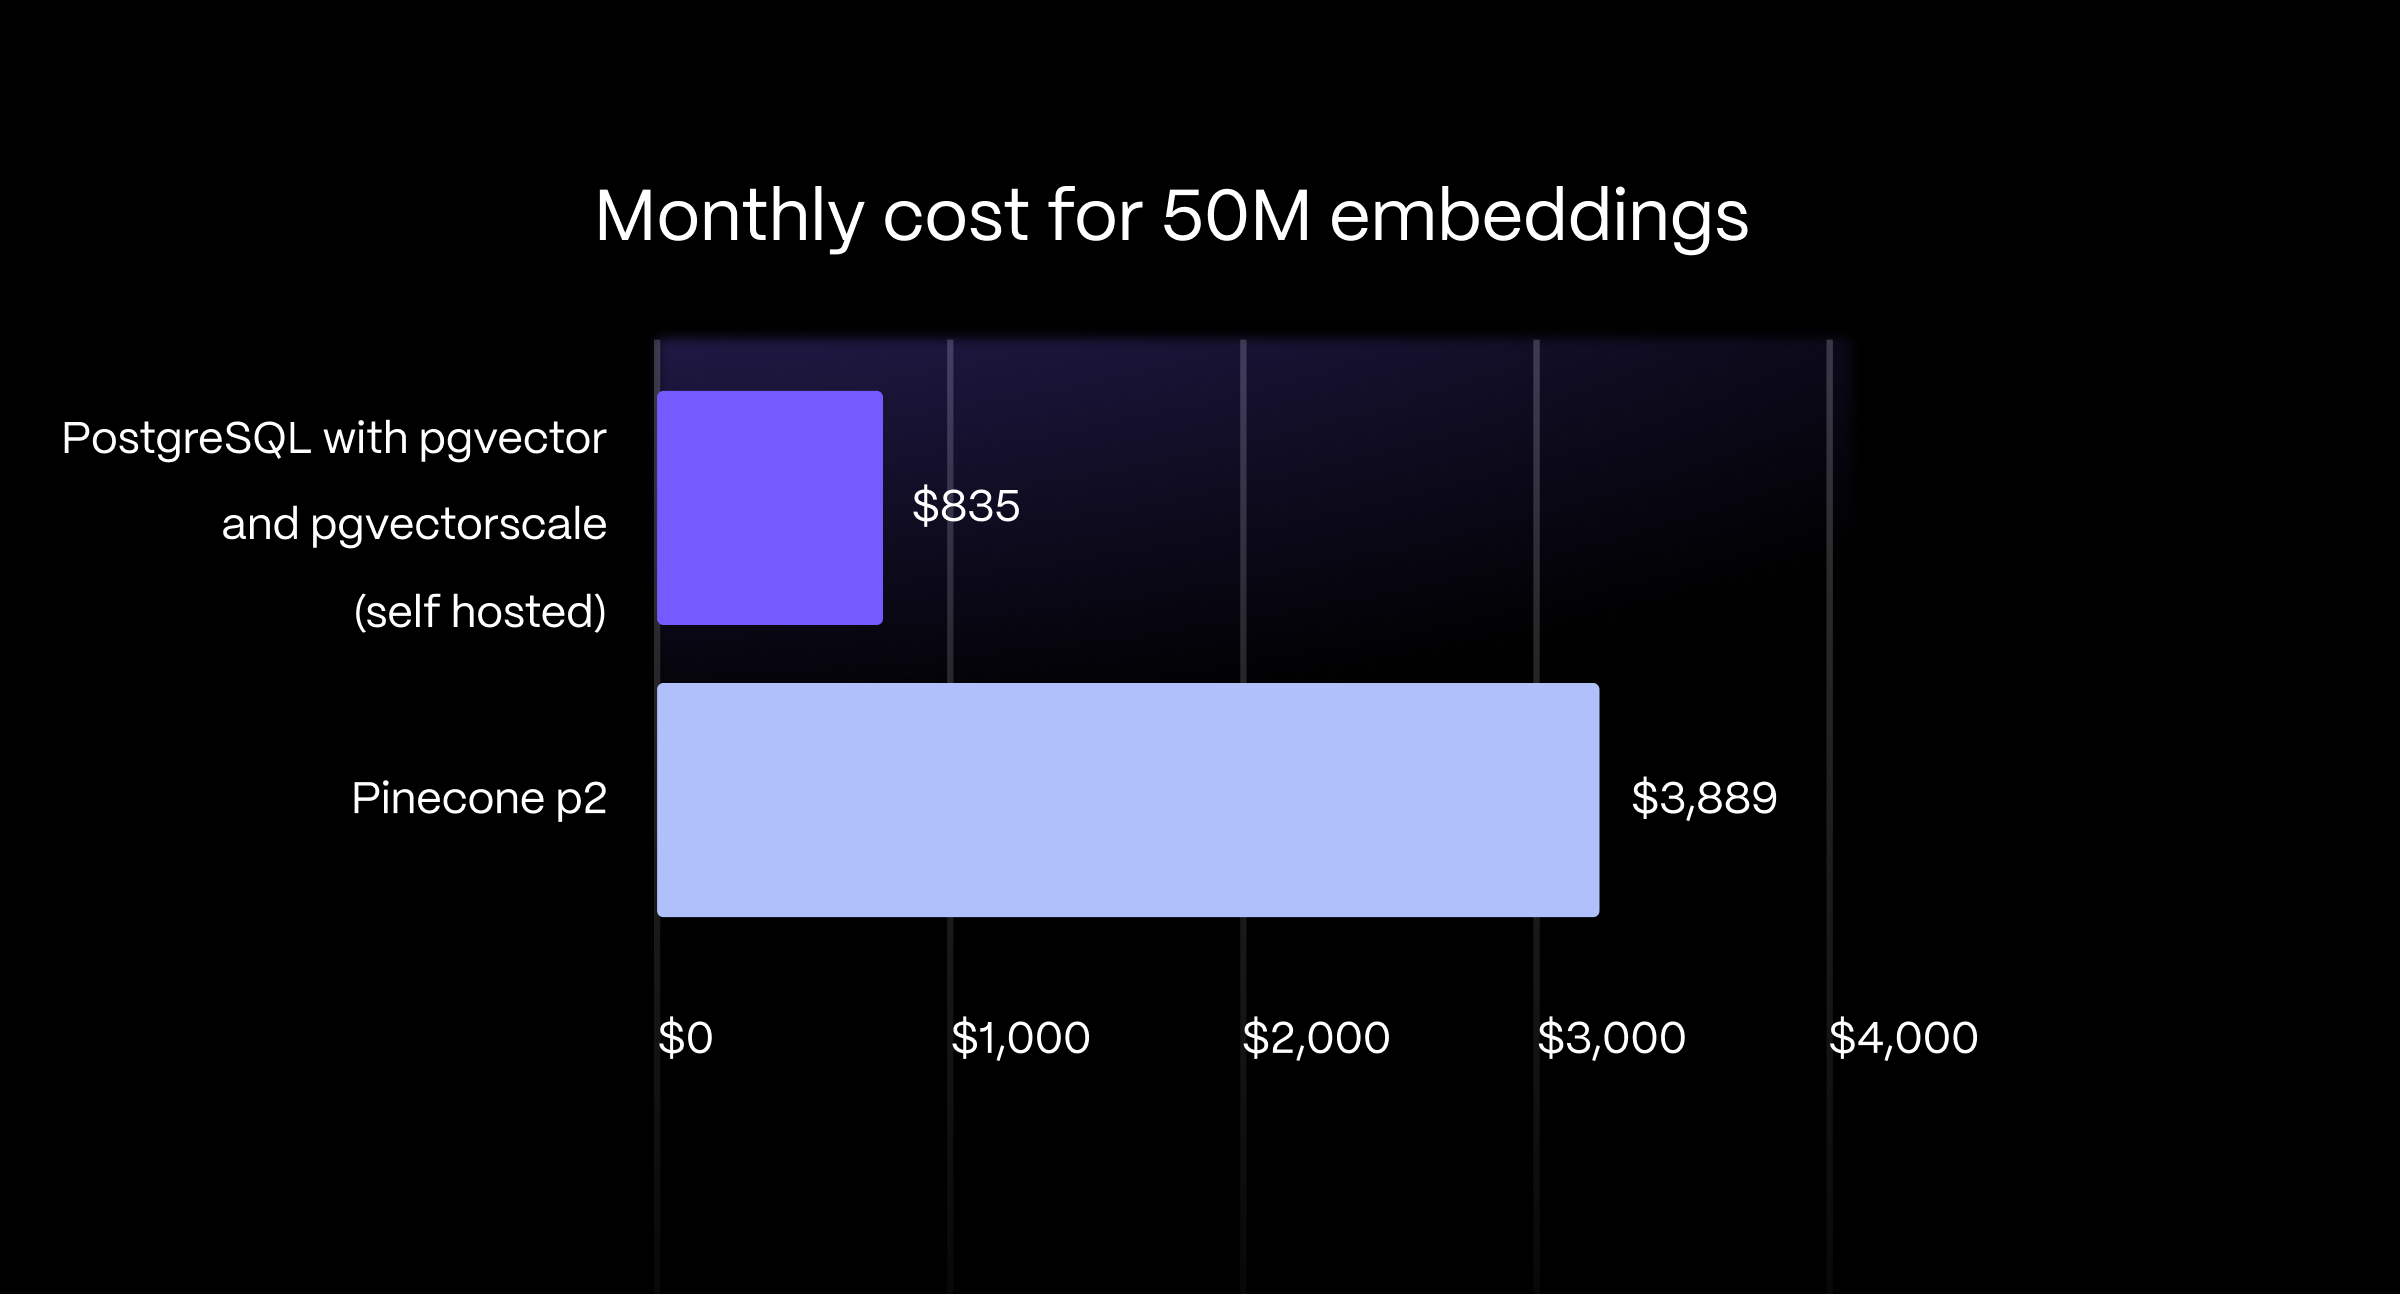 条形图显示 PostgreSQL 的成本比 Pinecone p2 的成本低 79%（Pinecone 每月 3889 美元，而 AWS EC2 上自托管每月 835 美元）。